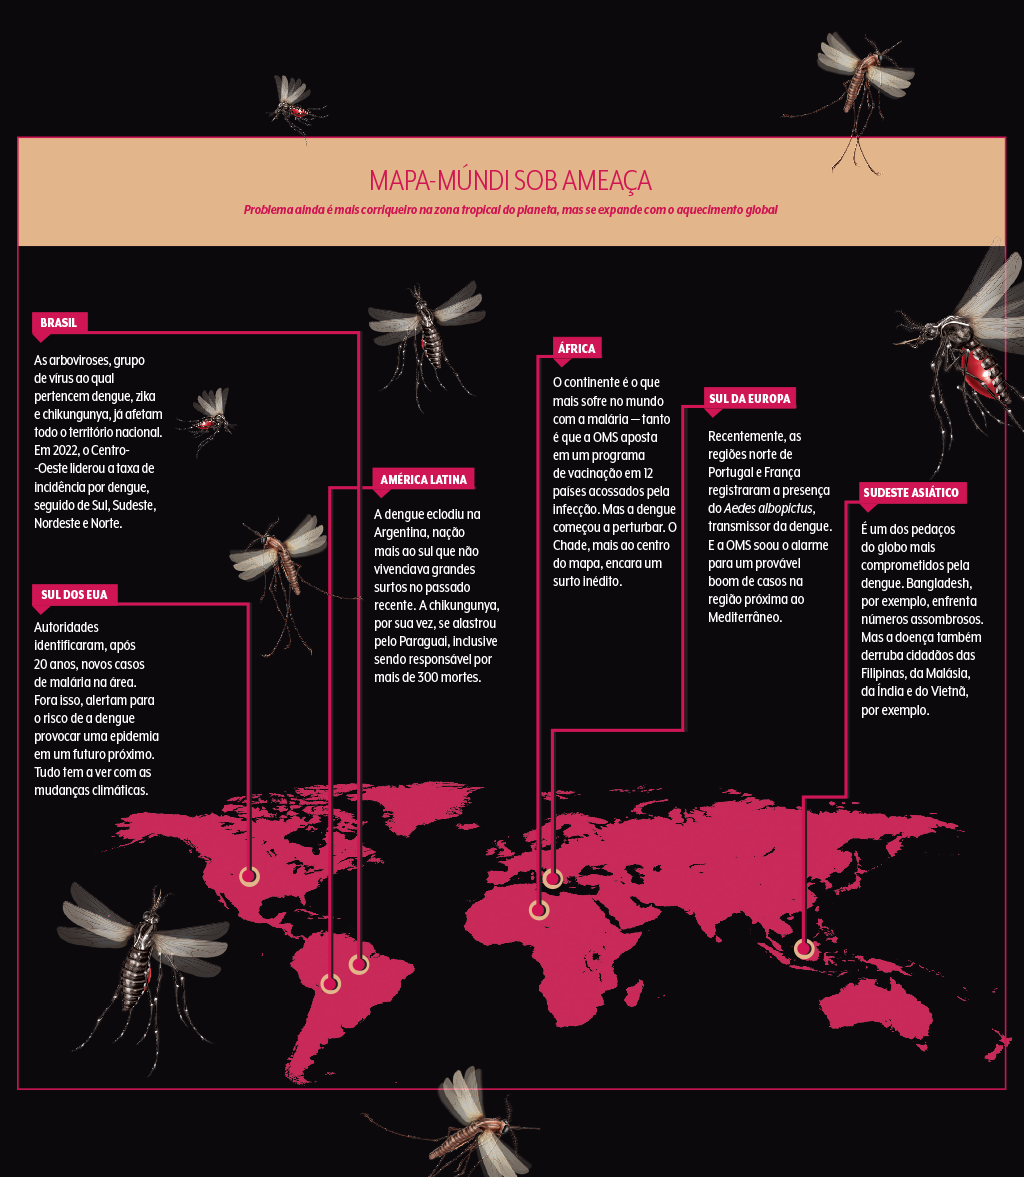 mapa-múndi de doenças transmitidas por mosquitos